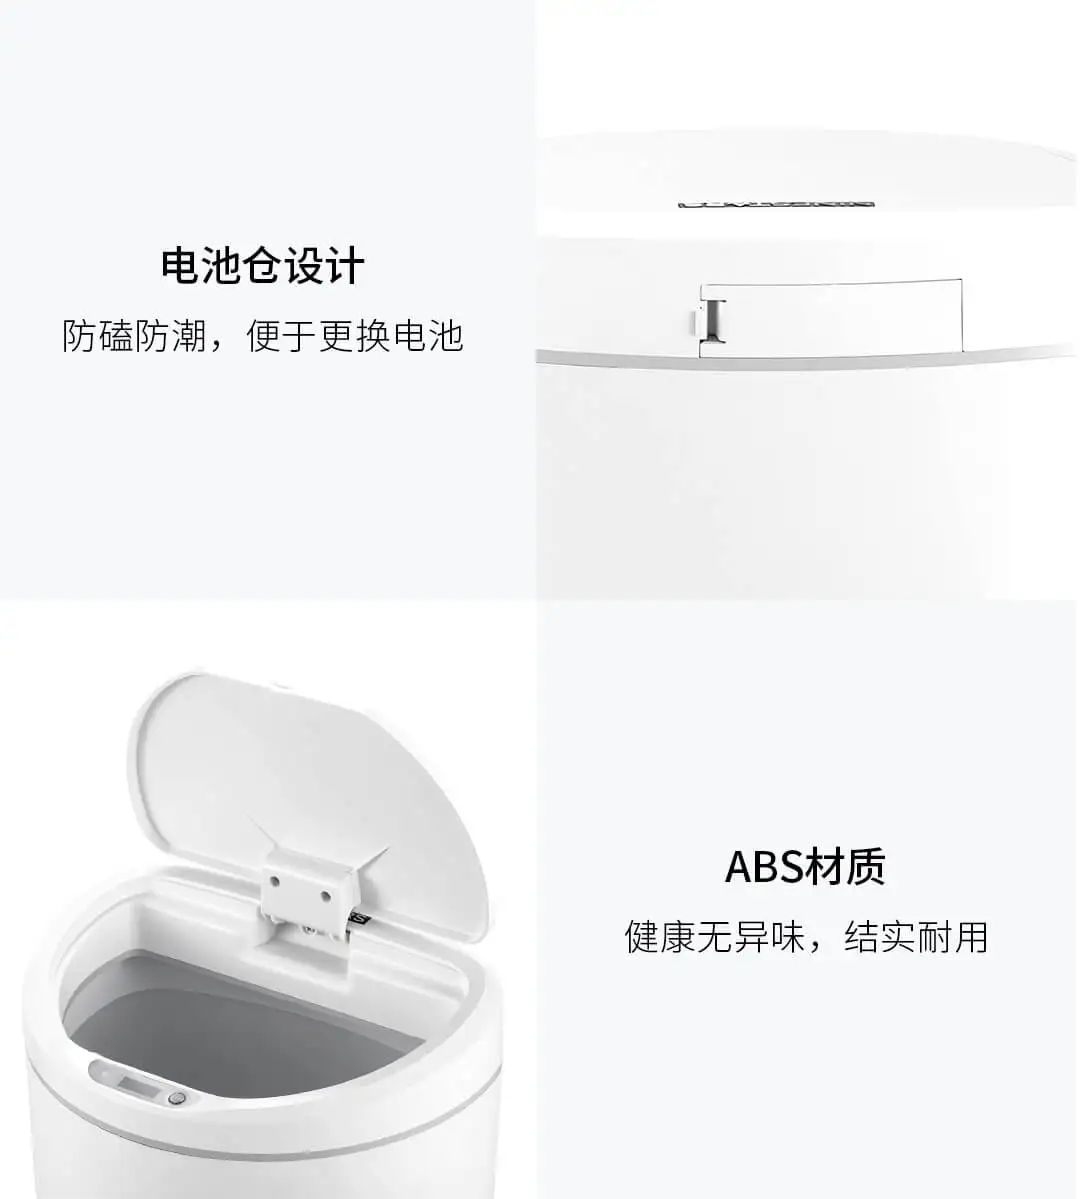 Xiaomi Mijia NINESTARS интеллектуальный датчик мусорный бак 10л емкость на кнопке управления регулируемое расстояние зондирования дома мусорное ведро